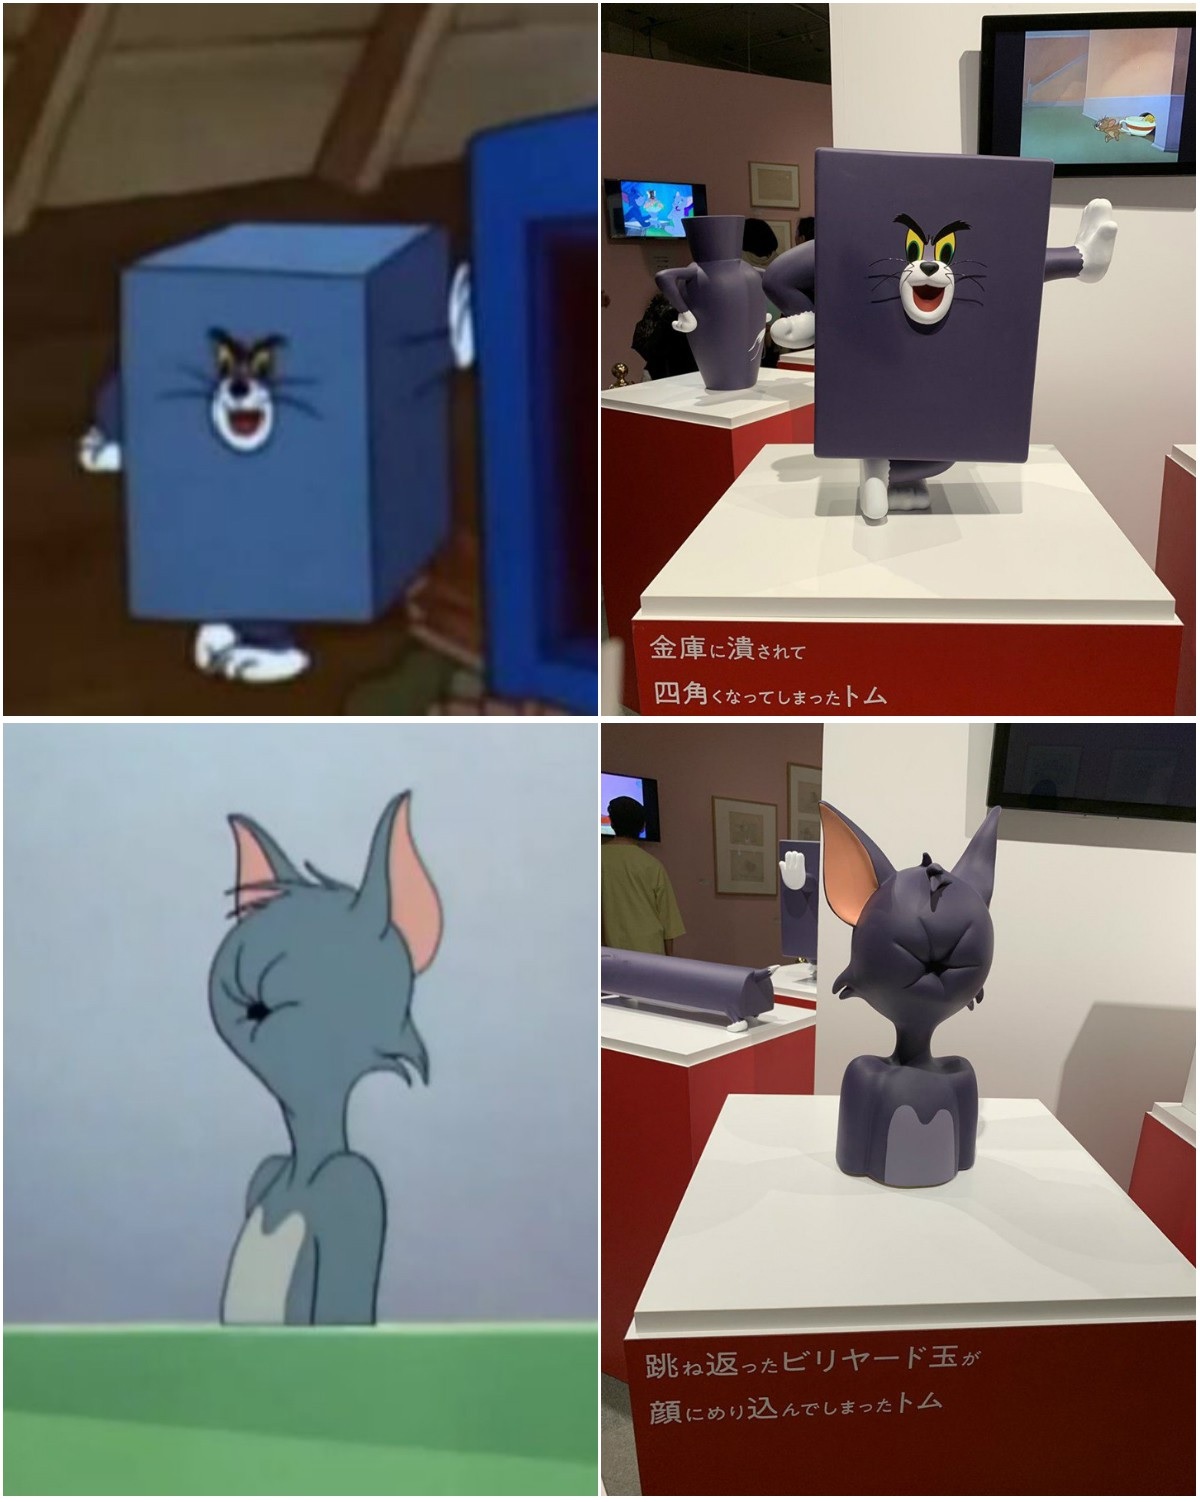 meme huyền thoại của Tom và Jerry